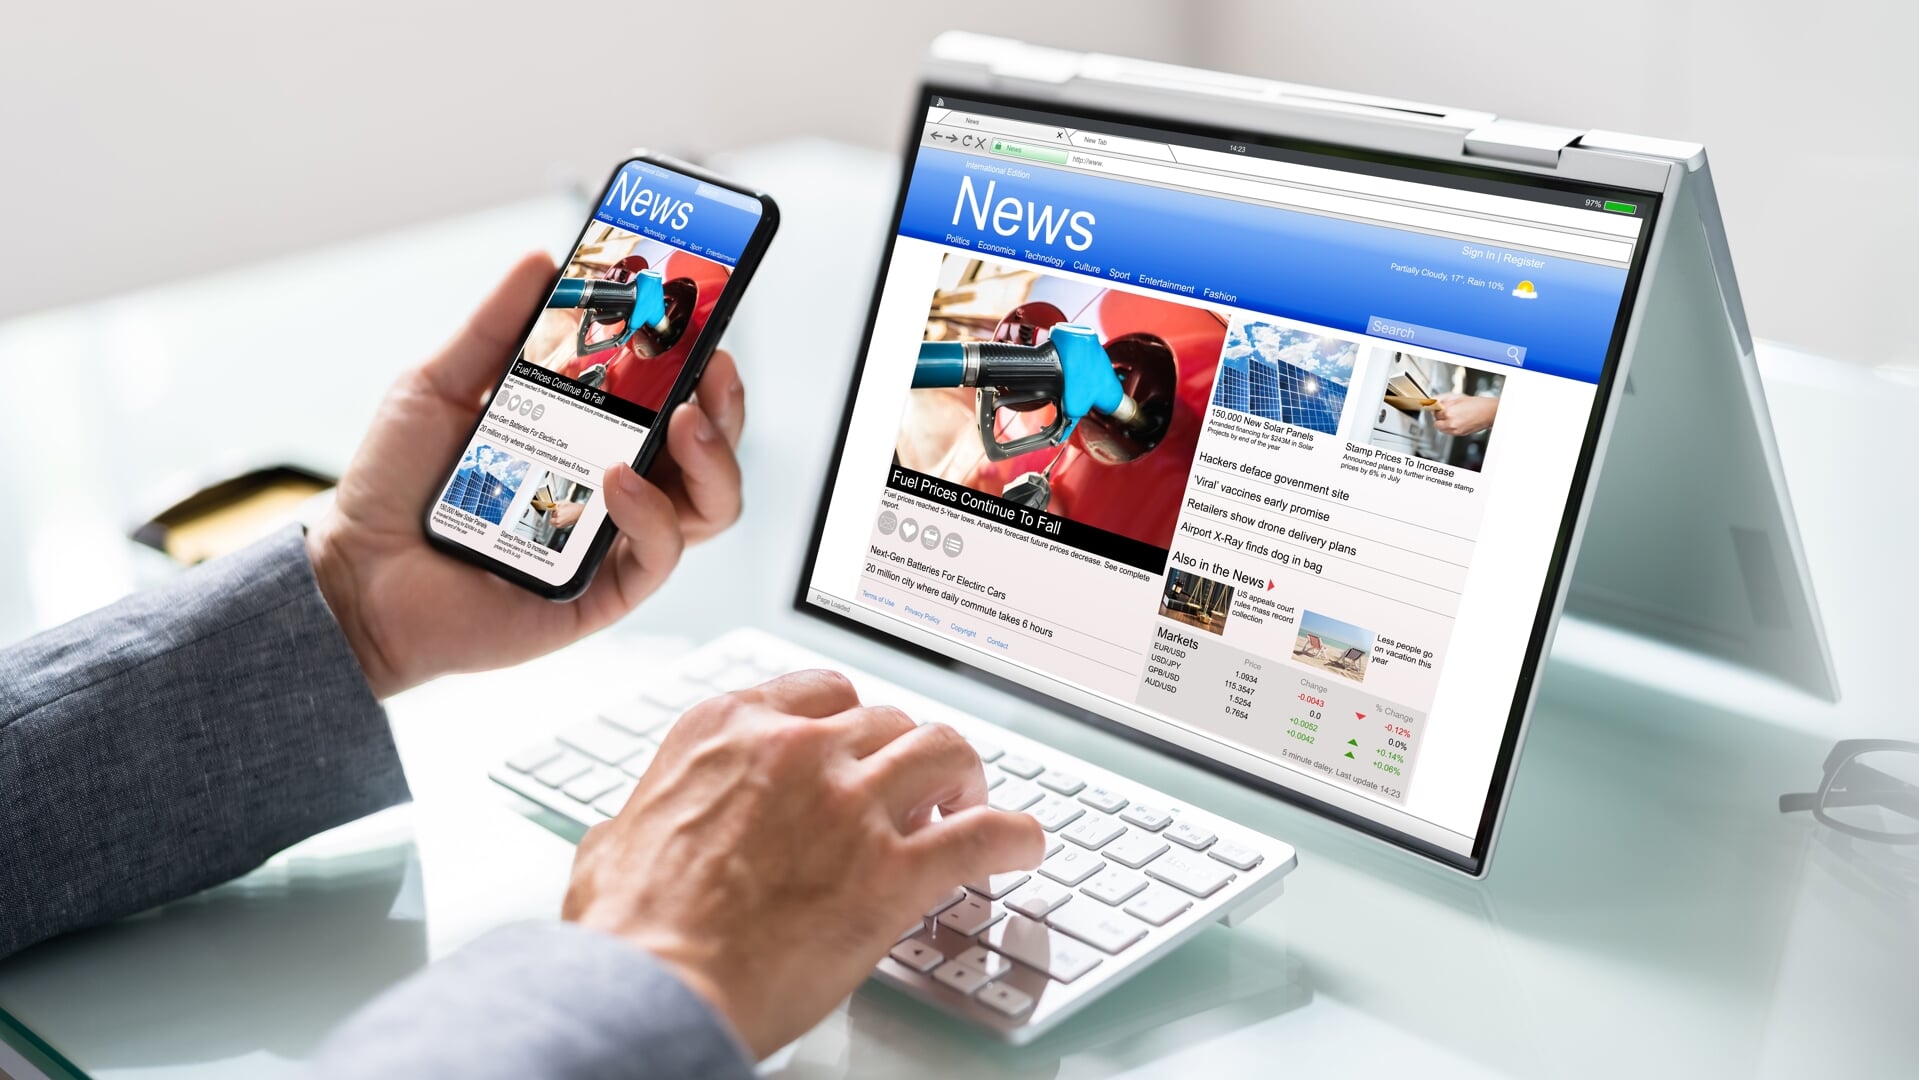 nieuws, news, smartphone